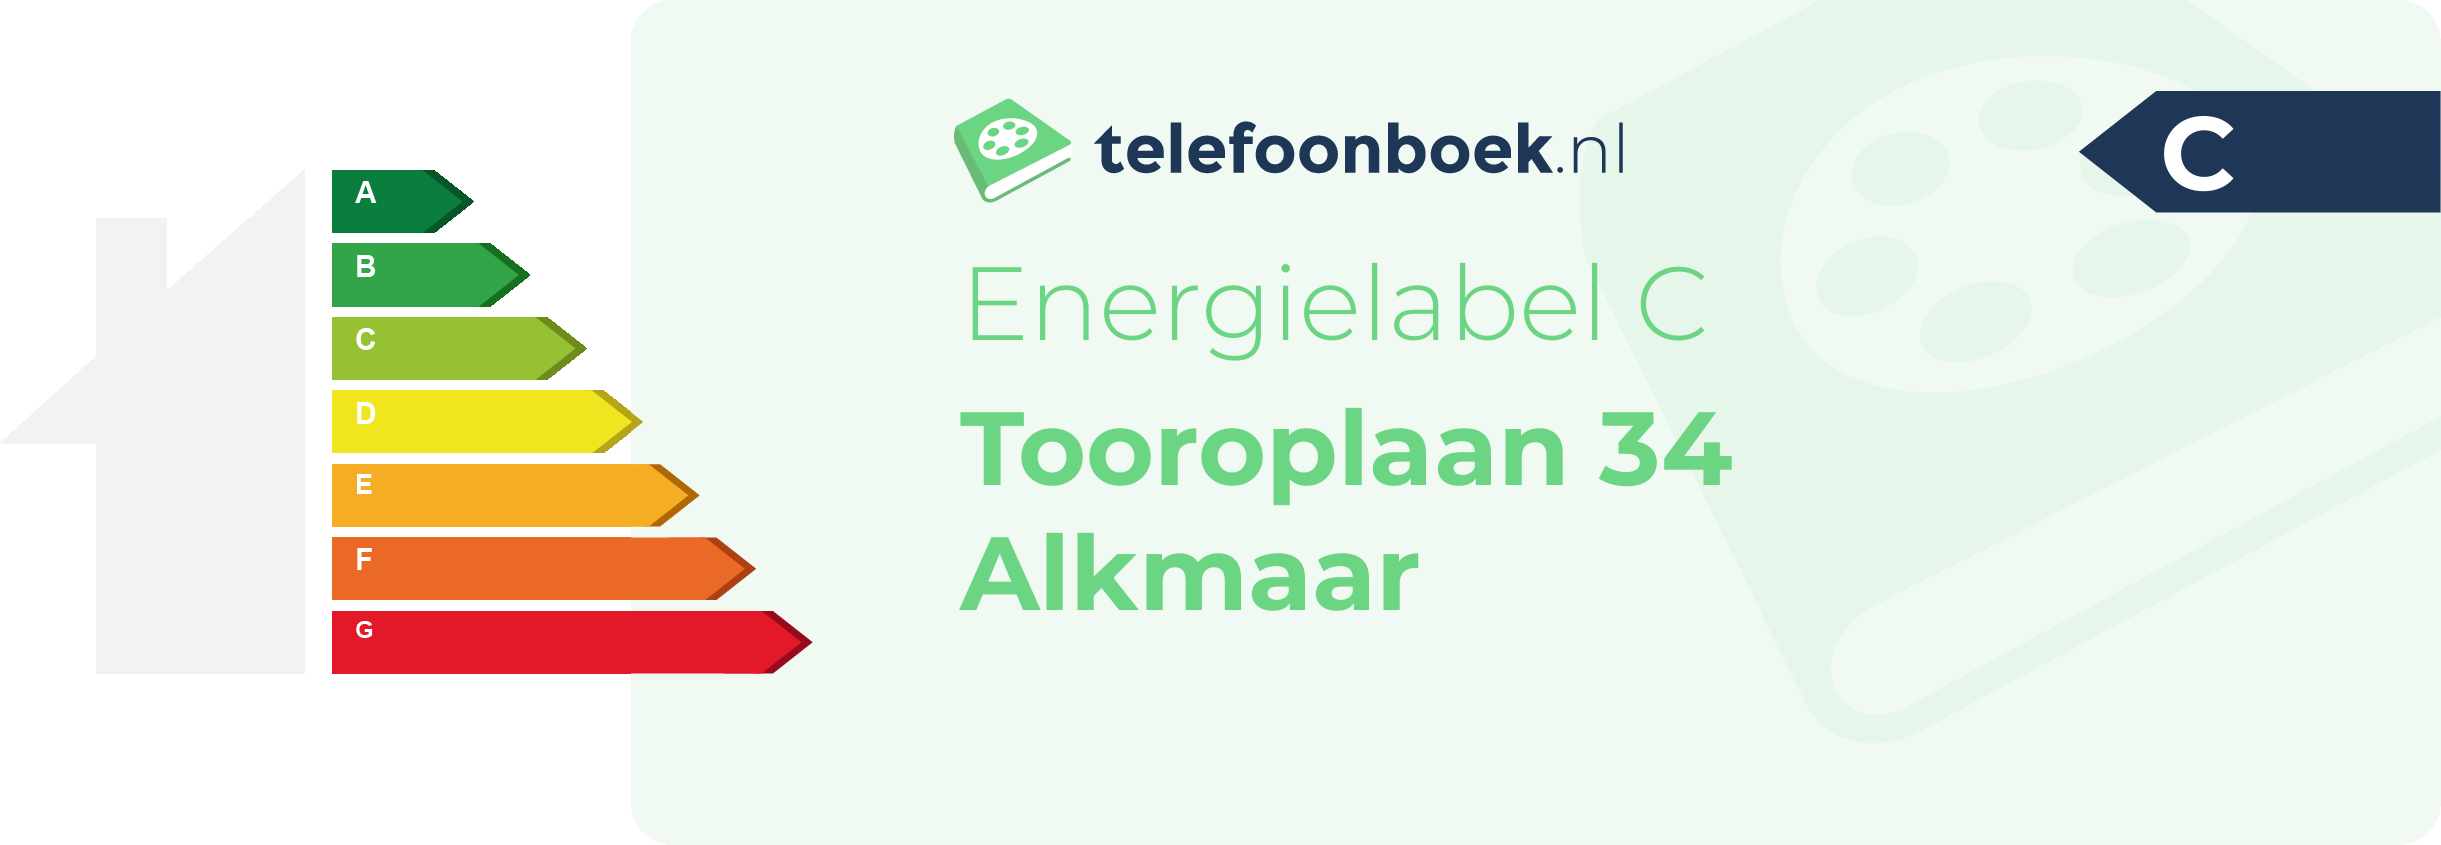 Energielabel Tooroplaan 34 Alkmaar